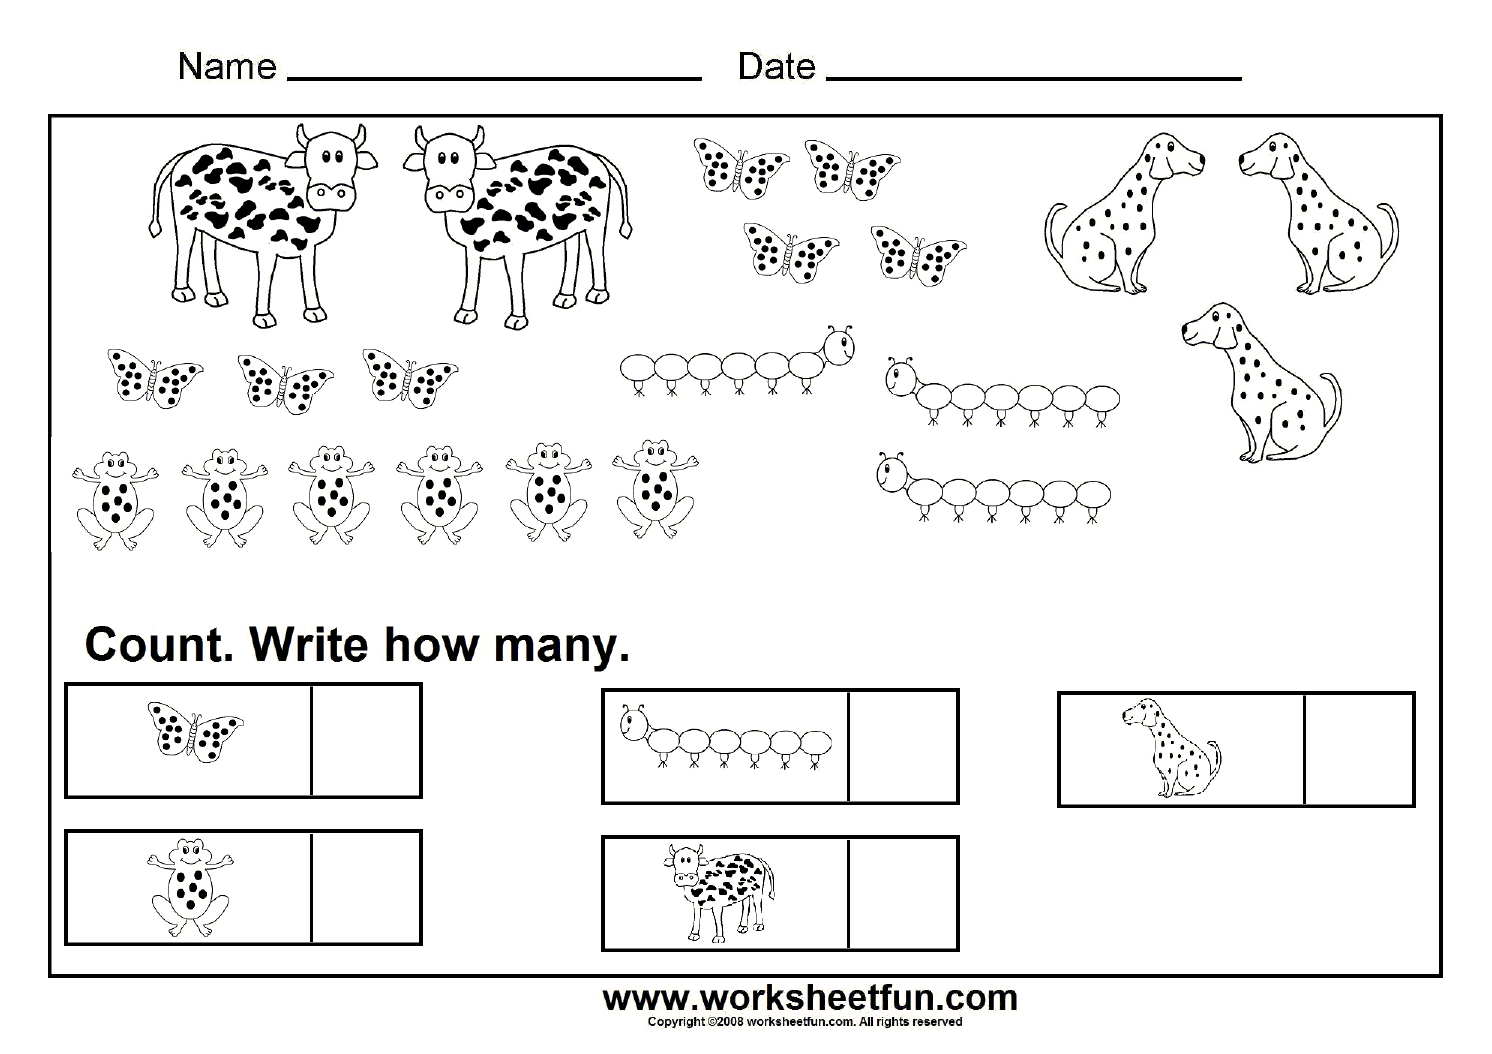 counting-worksheets-7-worksheets-free-printable-worksheets